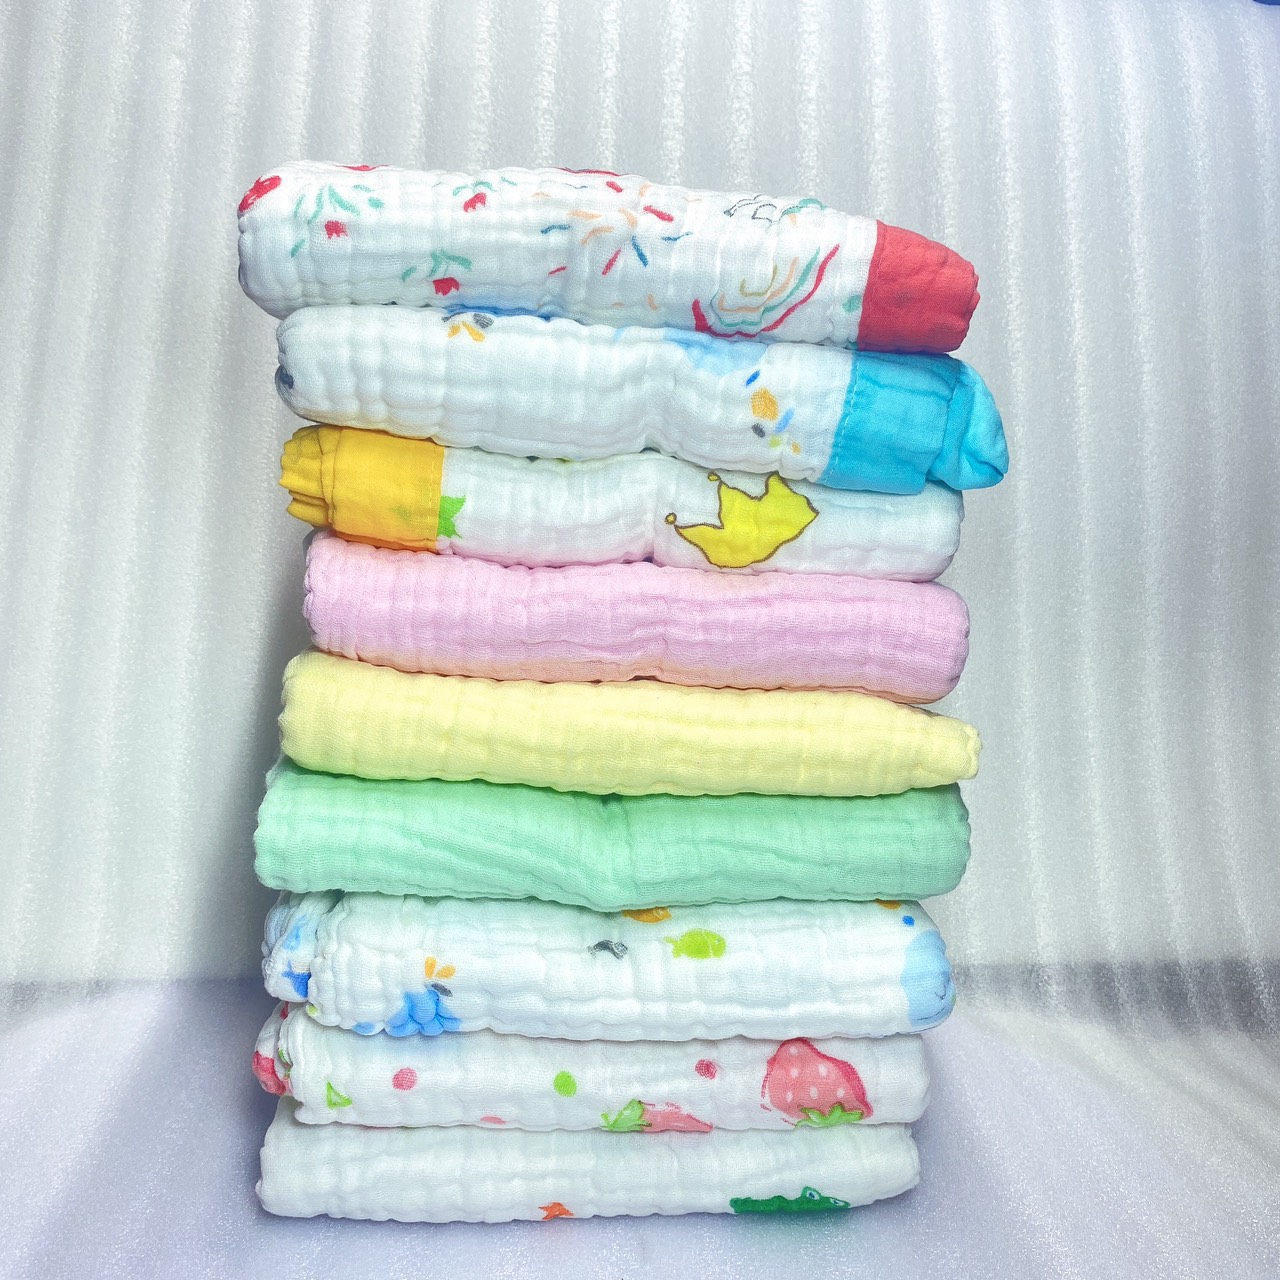 Khăn tắm xô sợi tre JUBON 6 lớp đa năng làm khăn tắm, khăn choàng